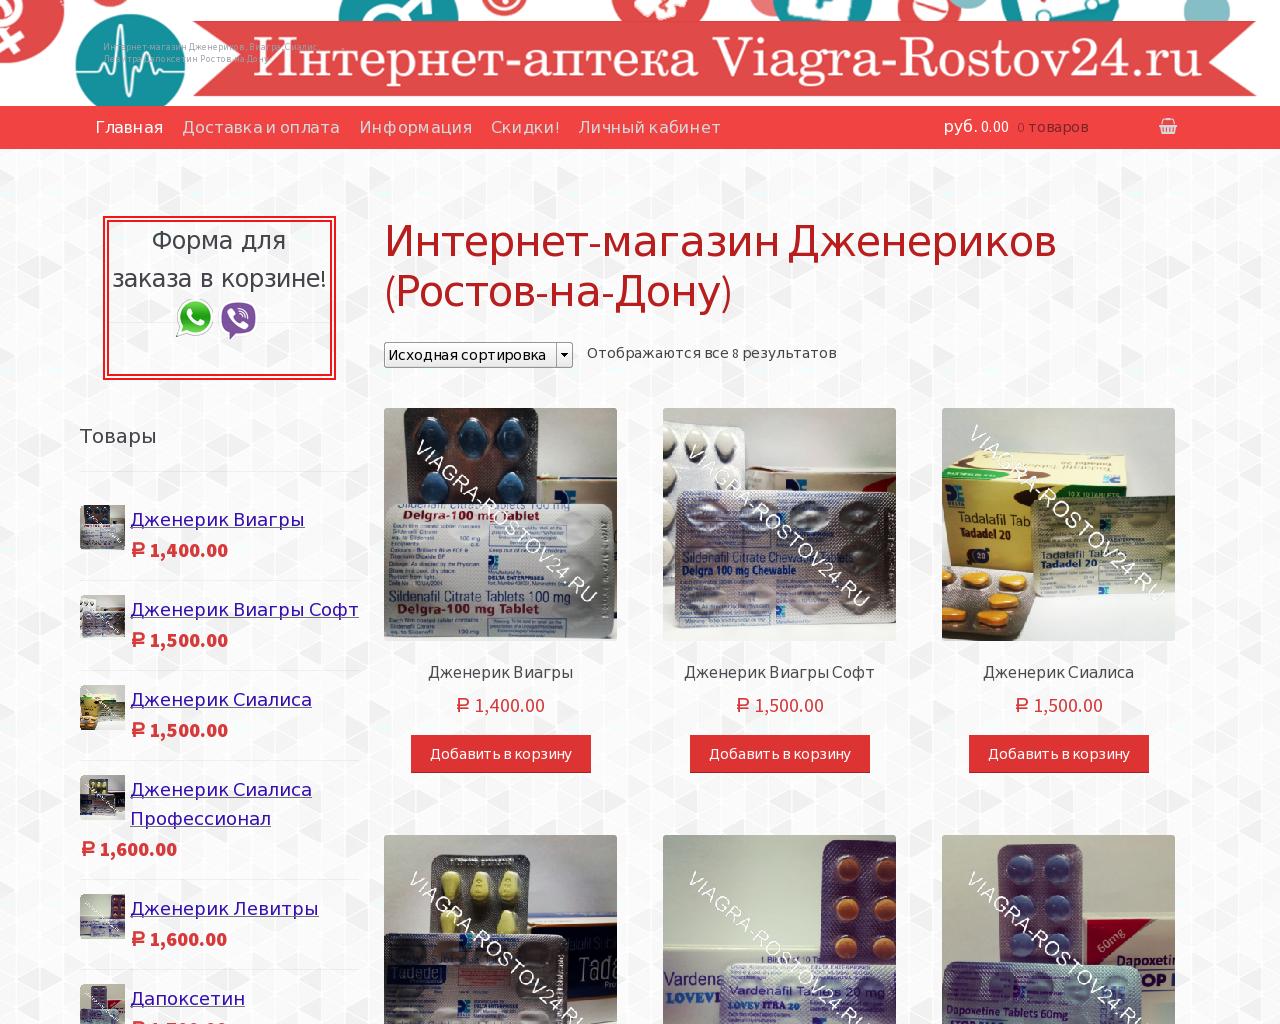 Изображение сайта viagra-rostov24.ru в разрешении 1280x1024